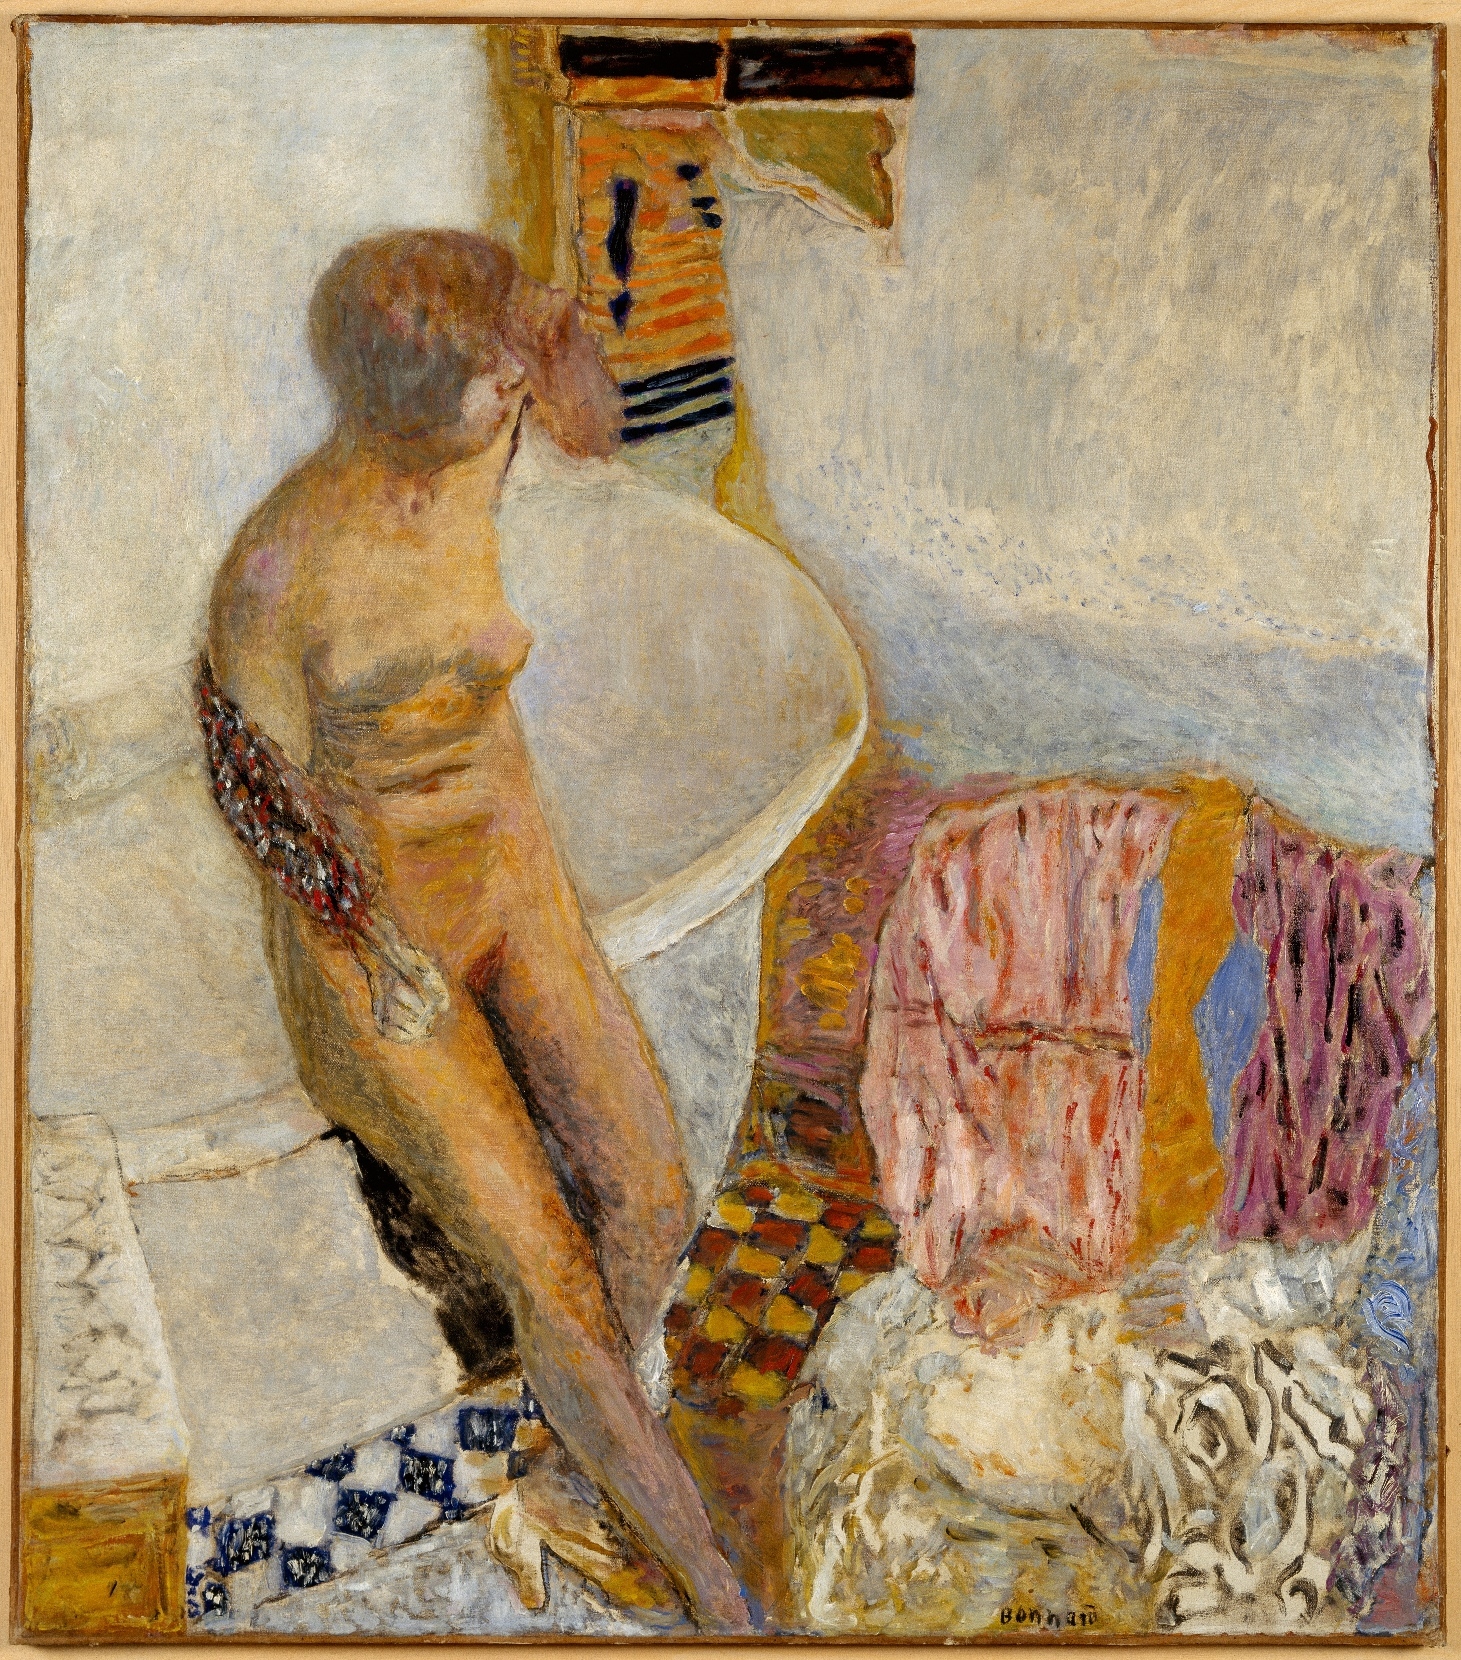 1926年 ピエール・ボナール 《浴槽の裸婦》